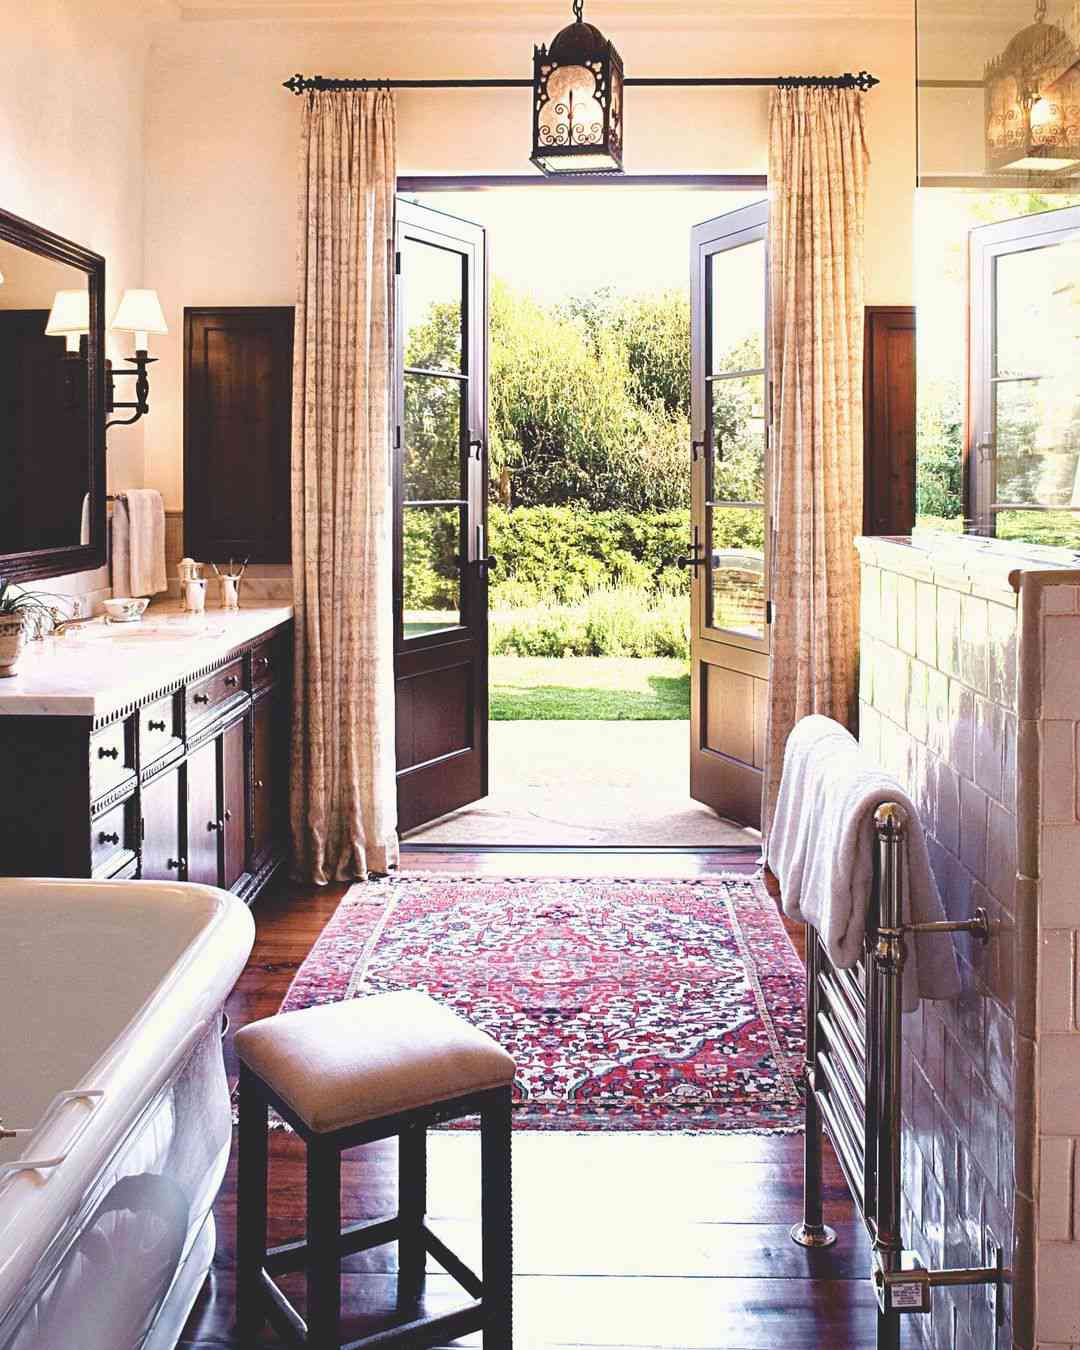 Badezimmer mit Zugang zum Garten, dunklem Holz und klassischen Details